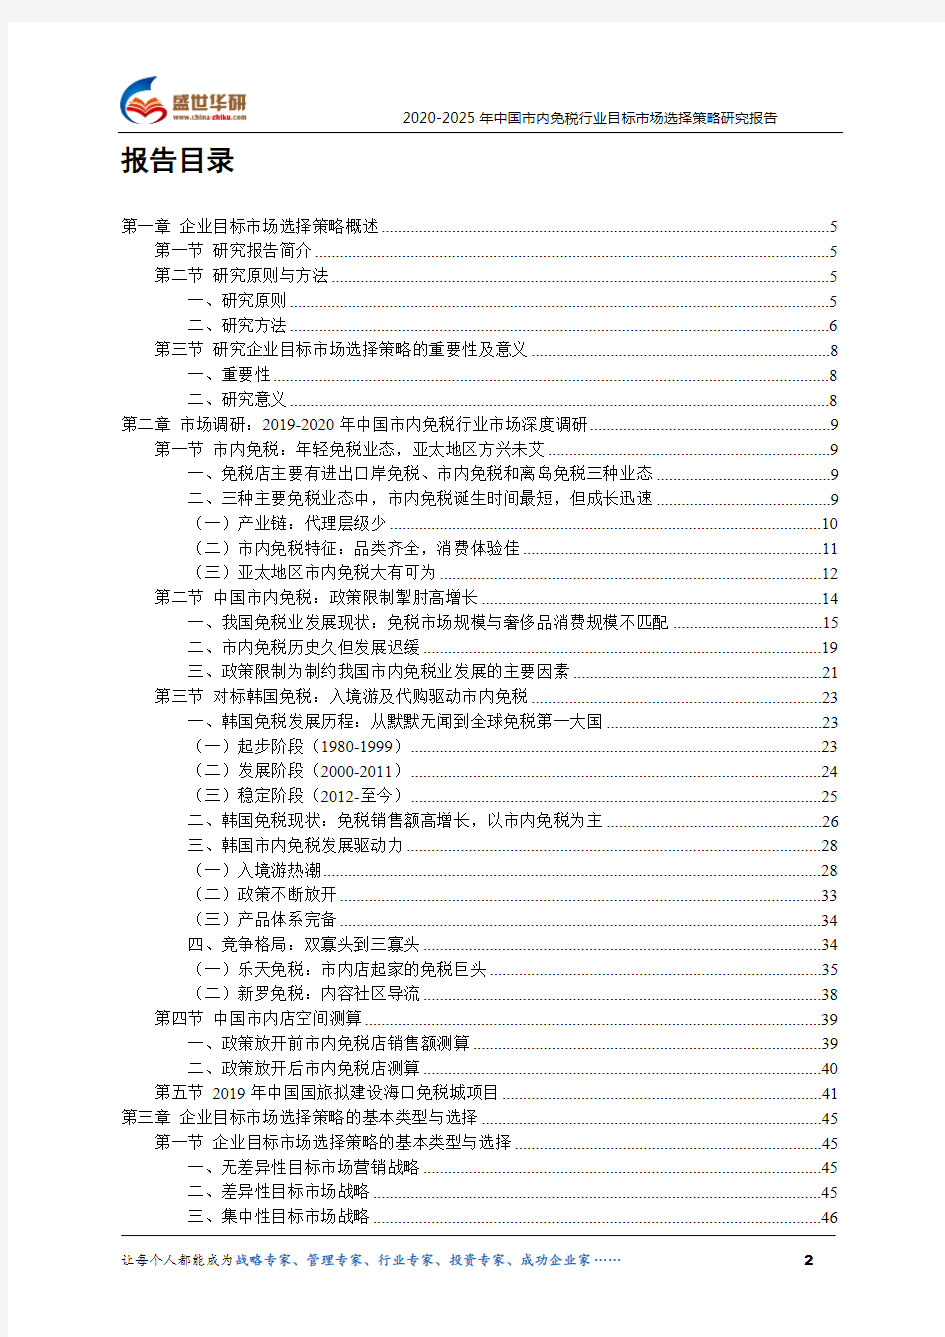 【完整版】2020-2025年中国市内免税行业目标市场选择策略研究报告